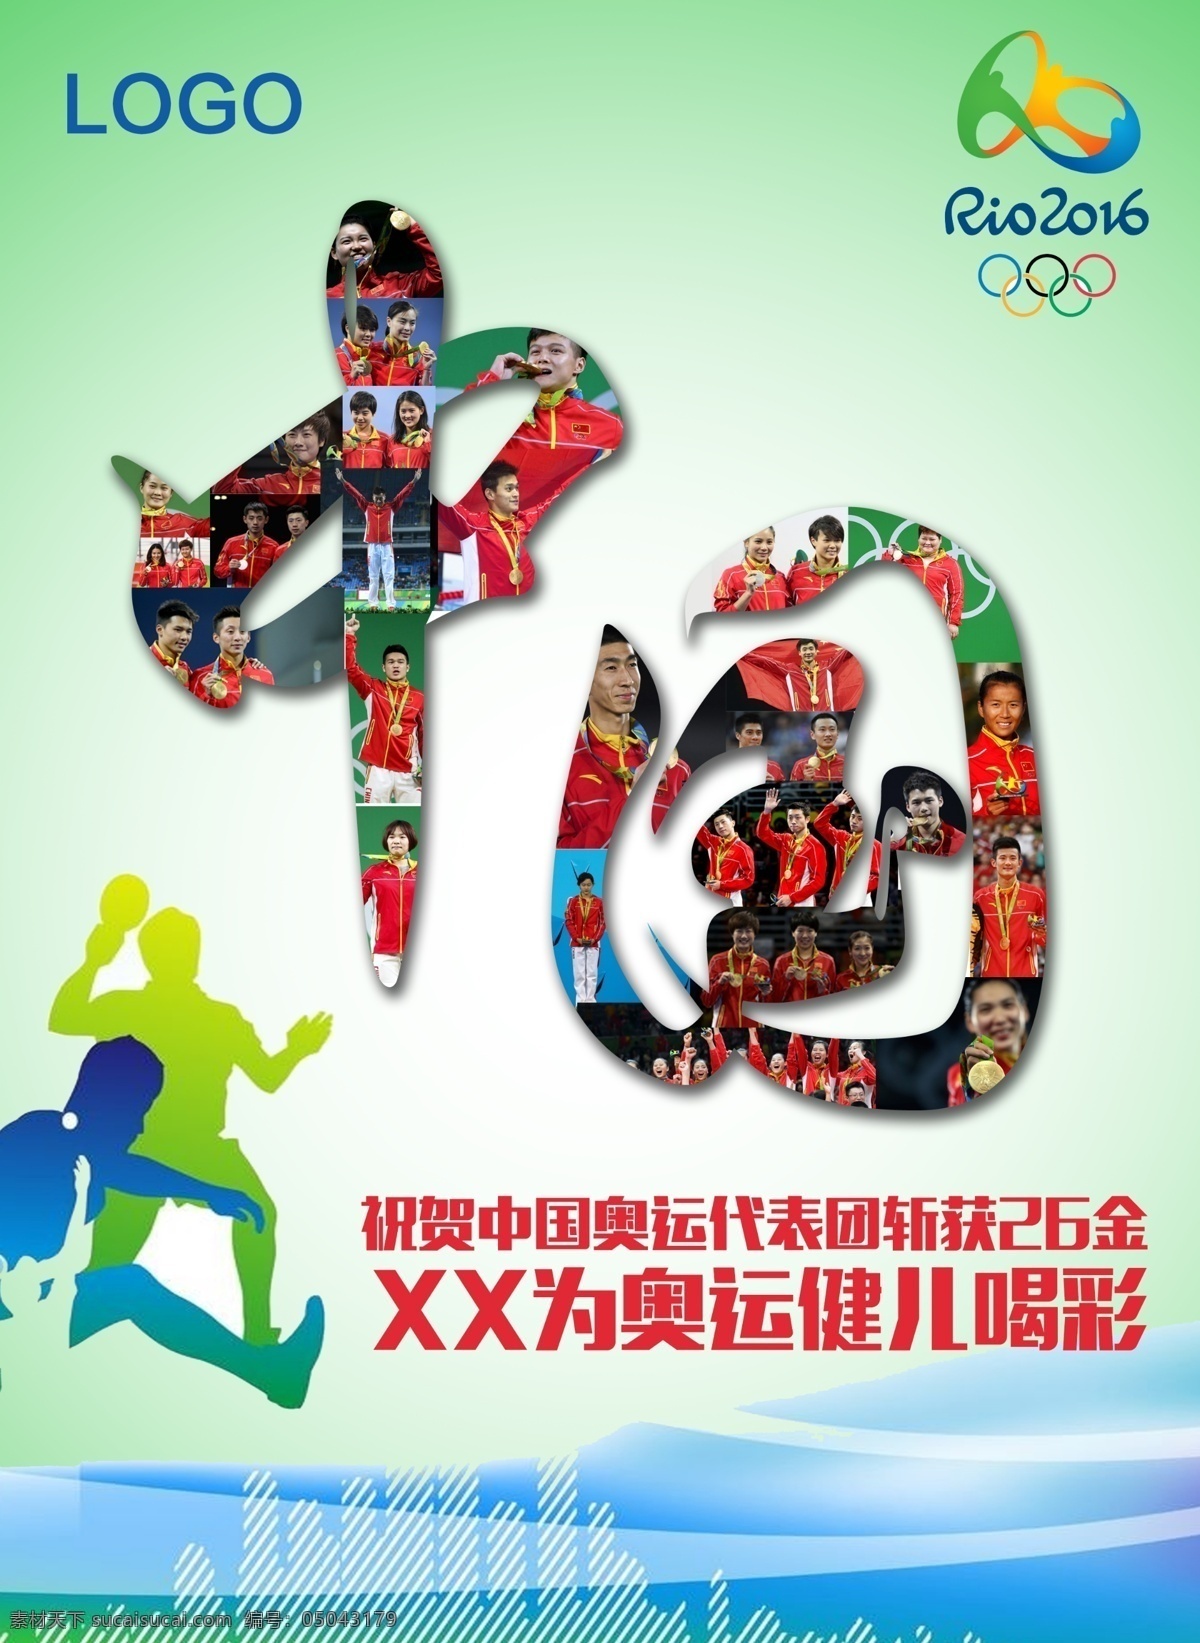 里约 奥运会 中国 金 里约奥运会 金牌 26金 闭幕式 中国队